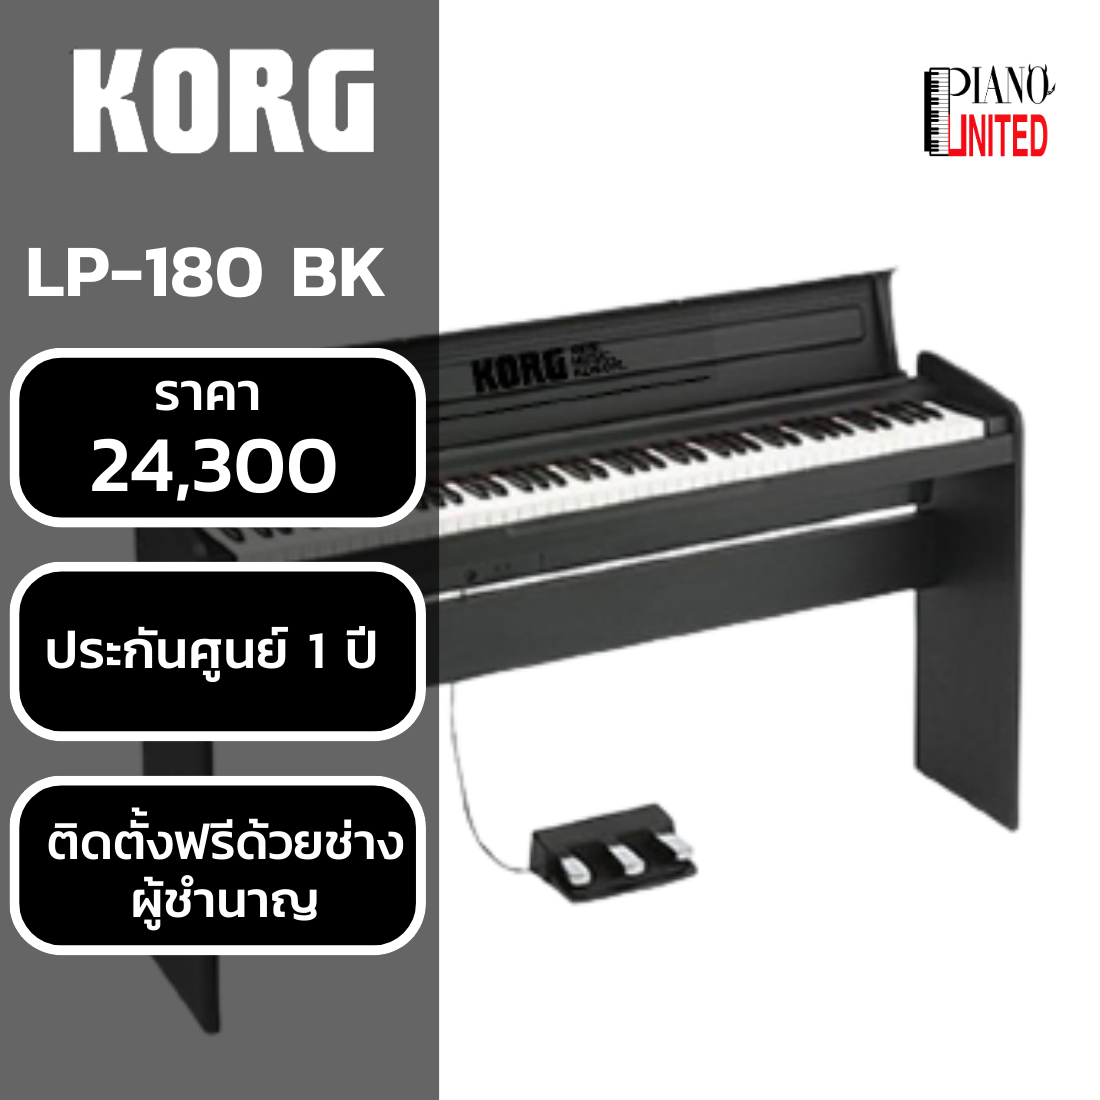 เปียโนไฟฟ้า Korg Micro PIANO สต็อกแน่น พร้อมส่ง - CT Music